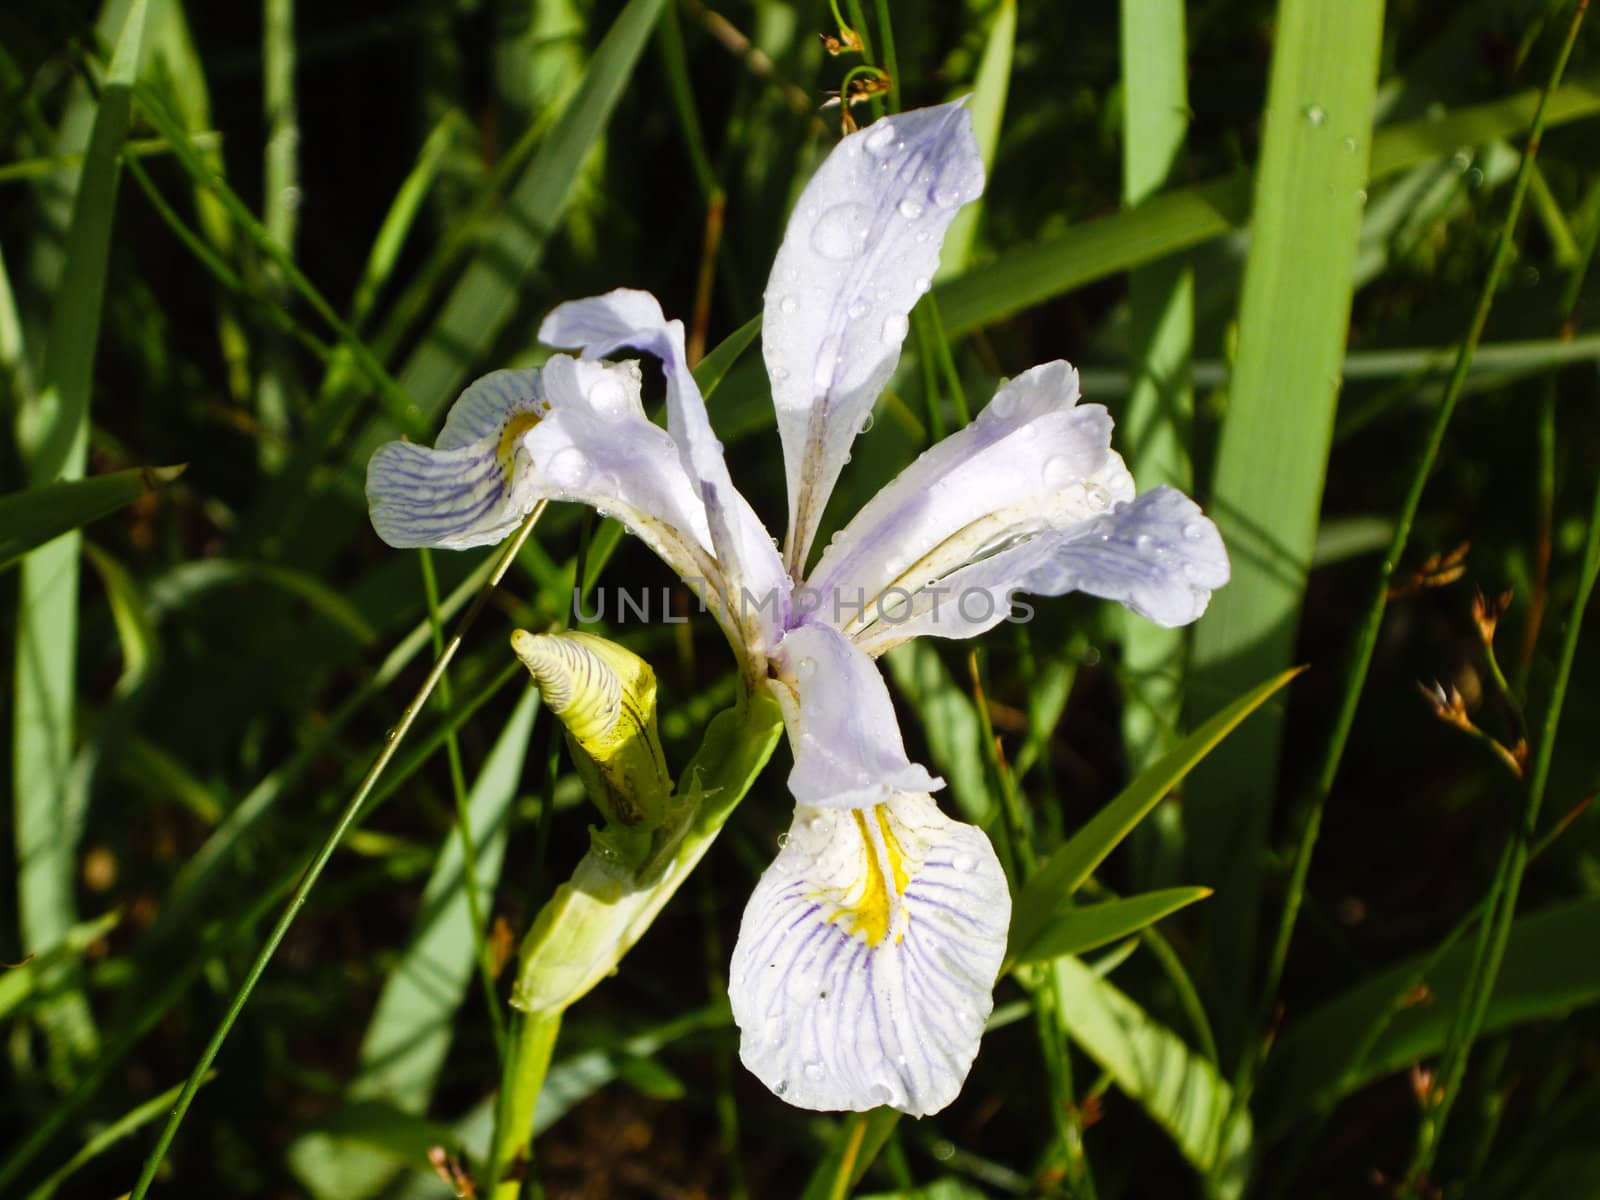 Delicate Iris wildflower blooms